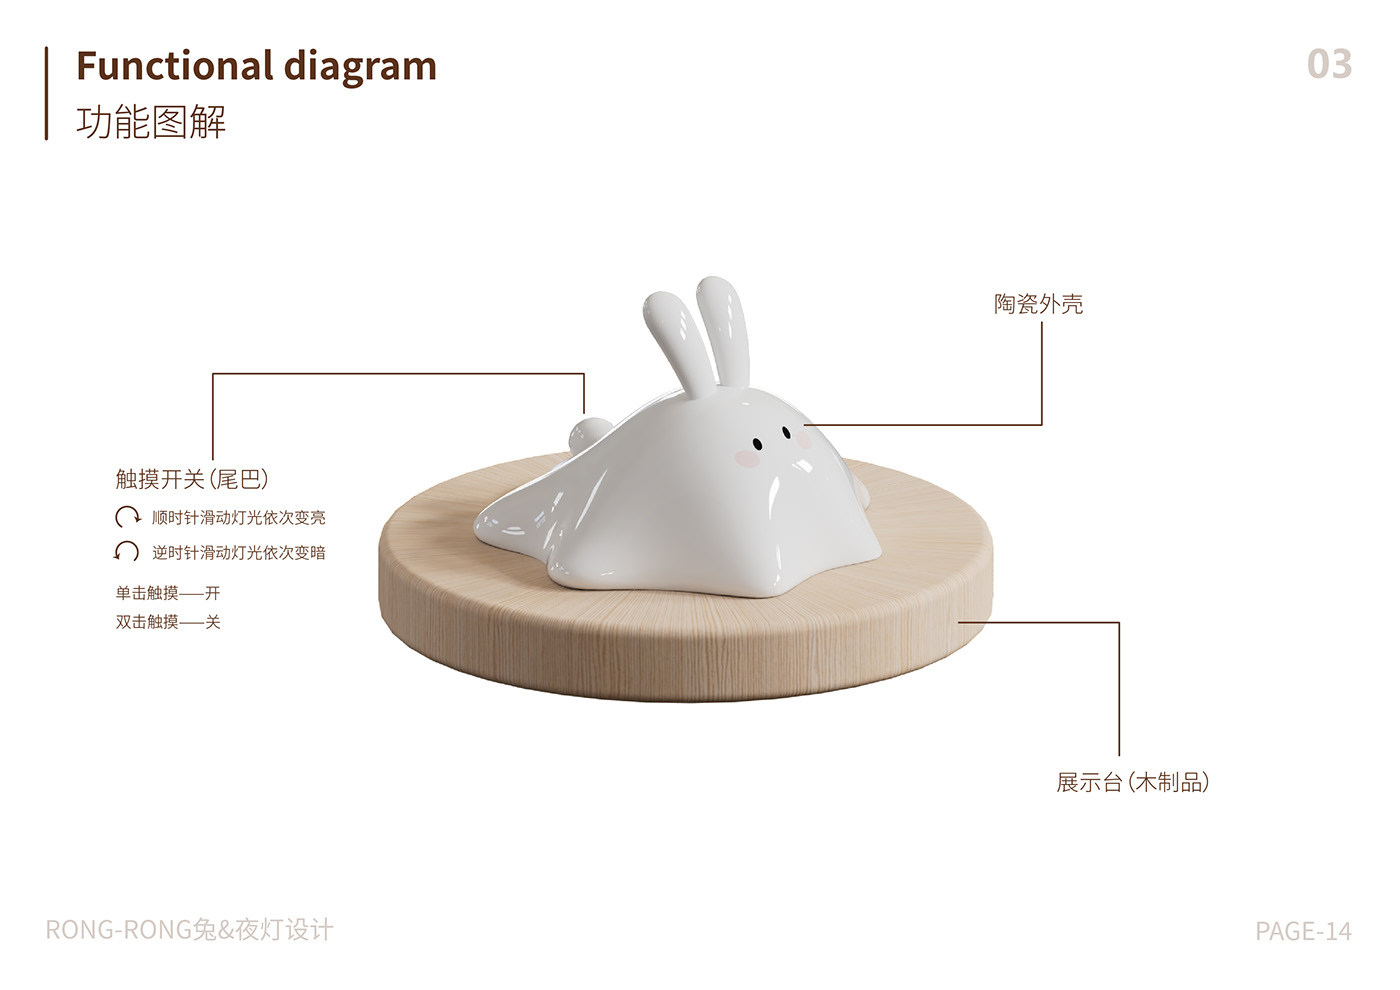 文创 creative industries 产品设计 产品渲染 3D rabbit illustrations product design  product designer 产品建模